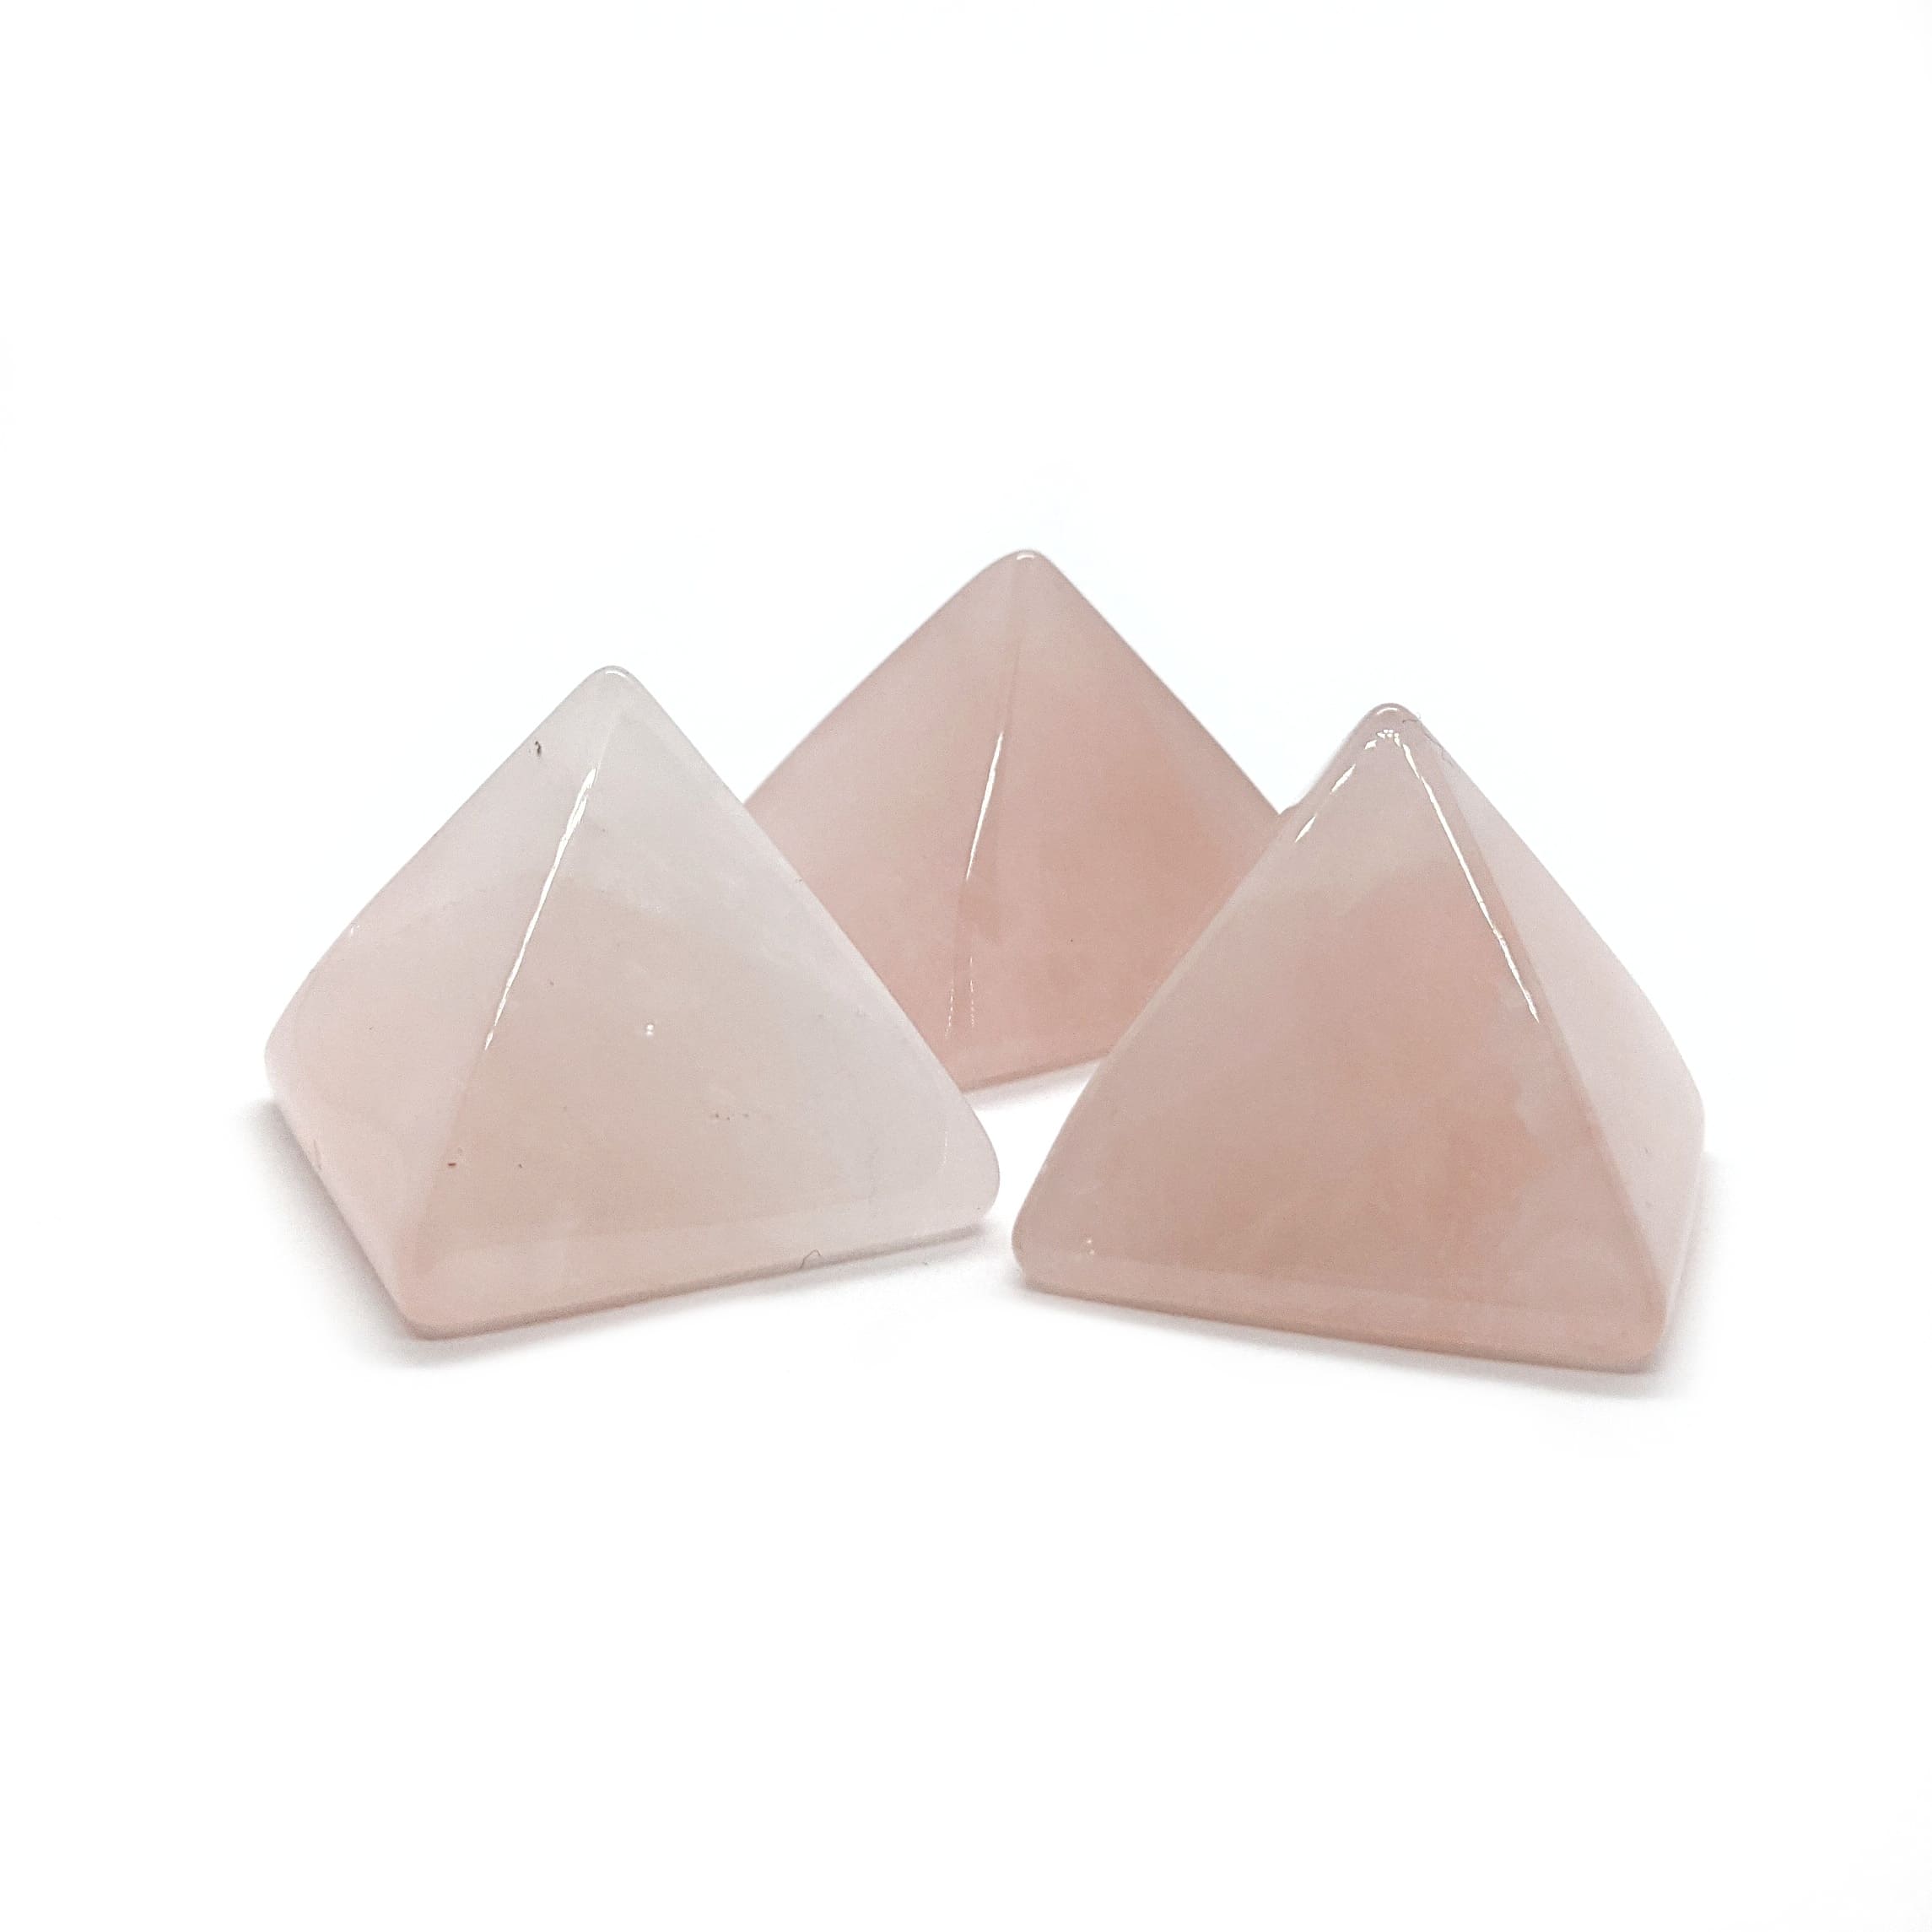 pyramide quartz rose pierre naturel